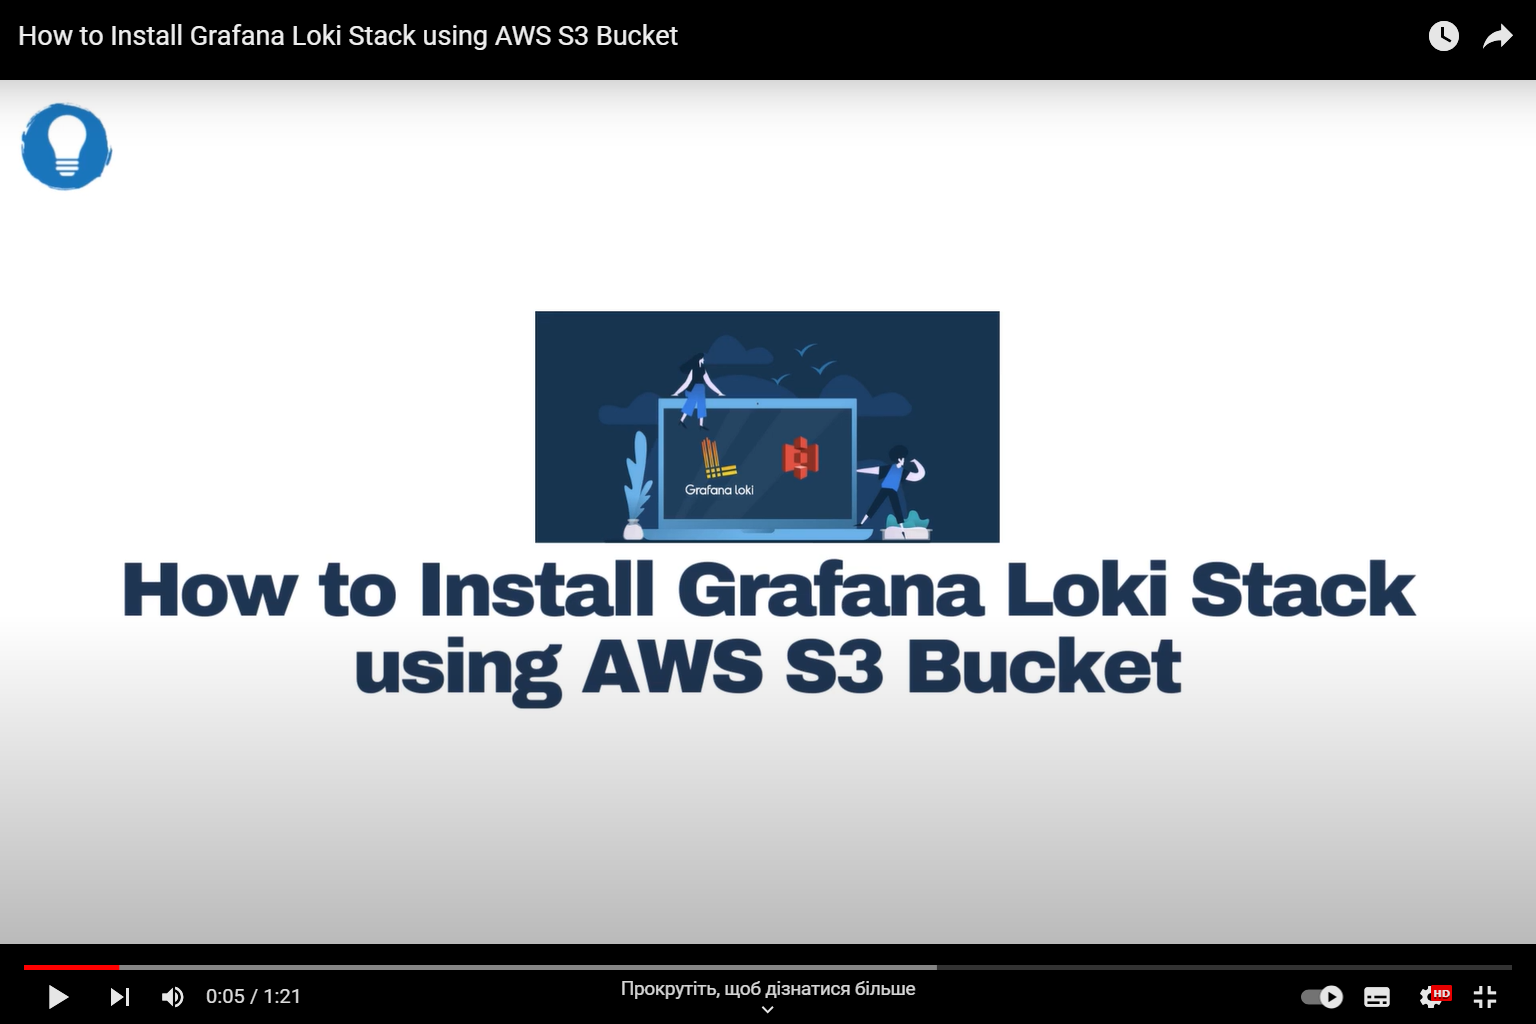 The inscription "How to Install Grafana Loki Stack using AWS S3 Bucket"